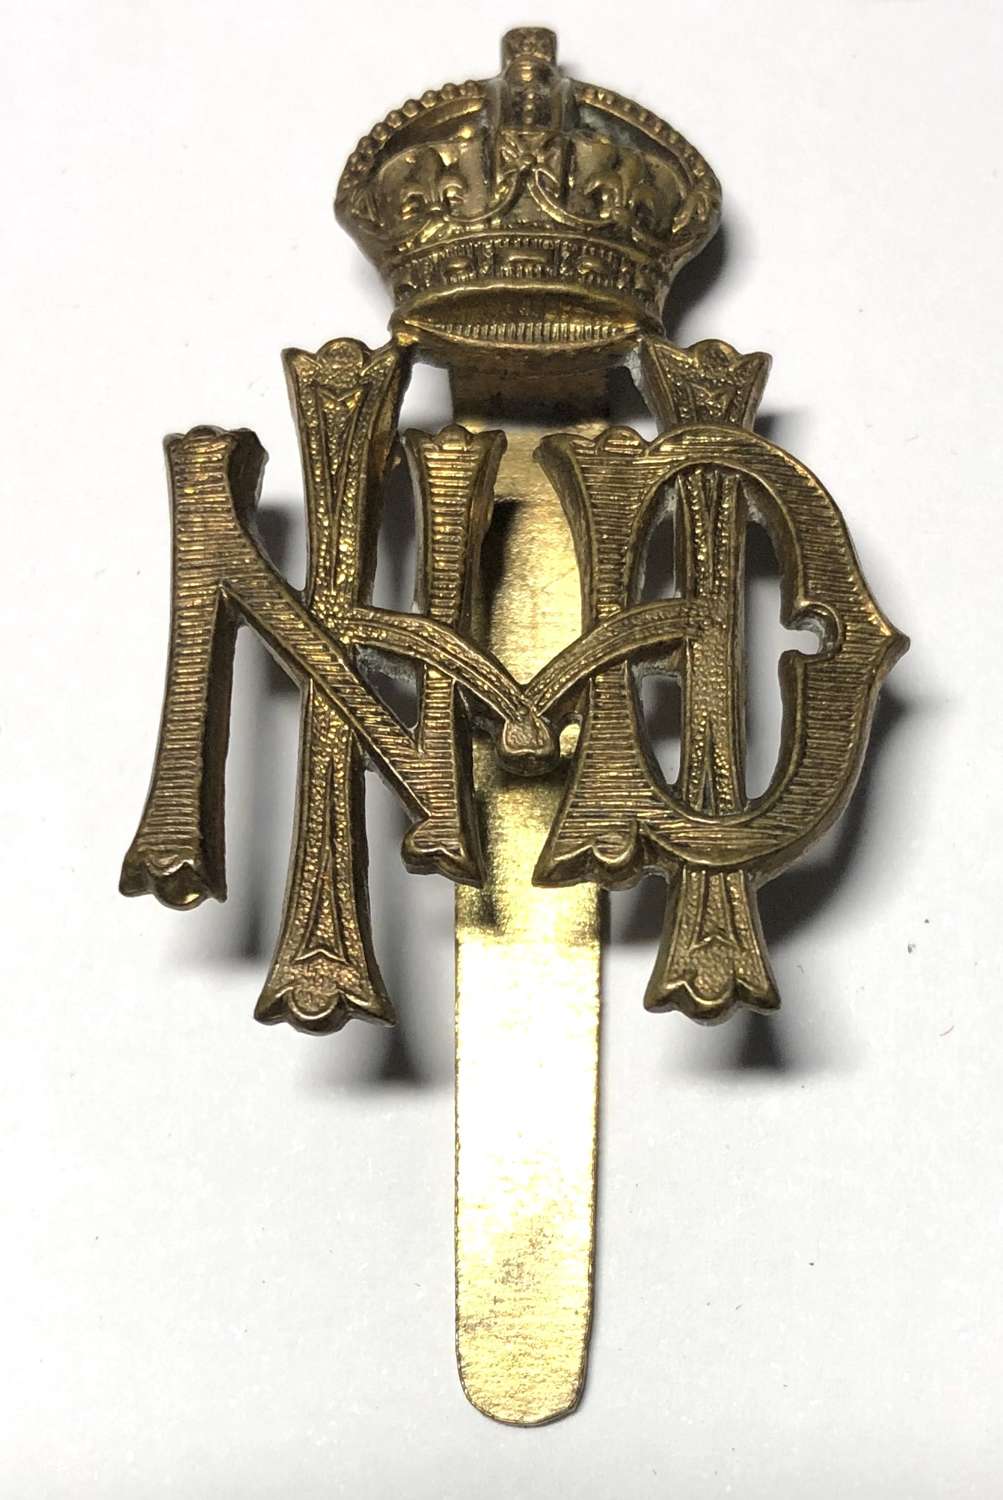 North Devon Hussars cap badge circa 1908-20